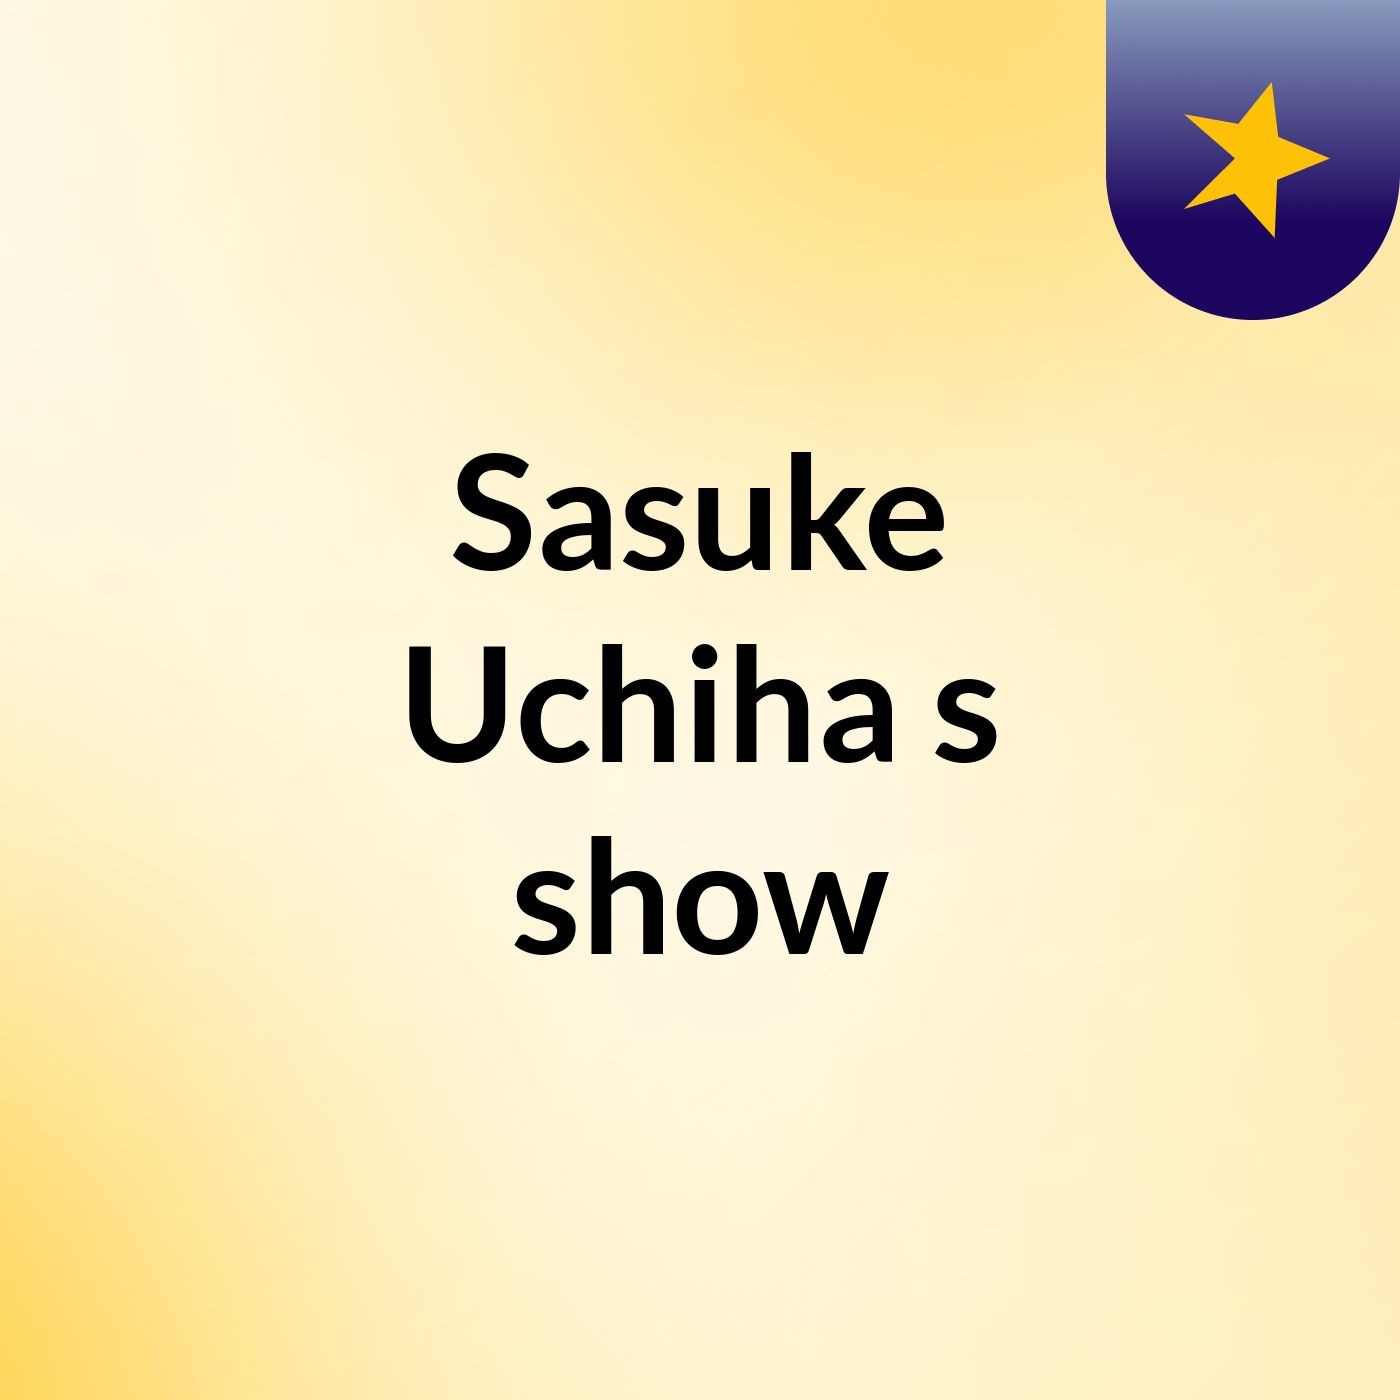 Sasuke Uchiha's show